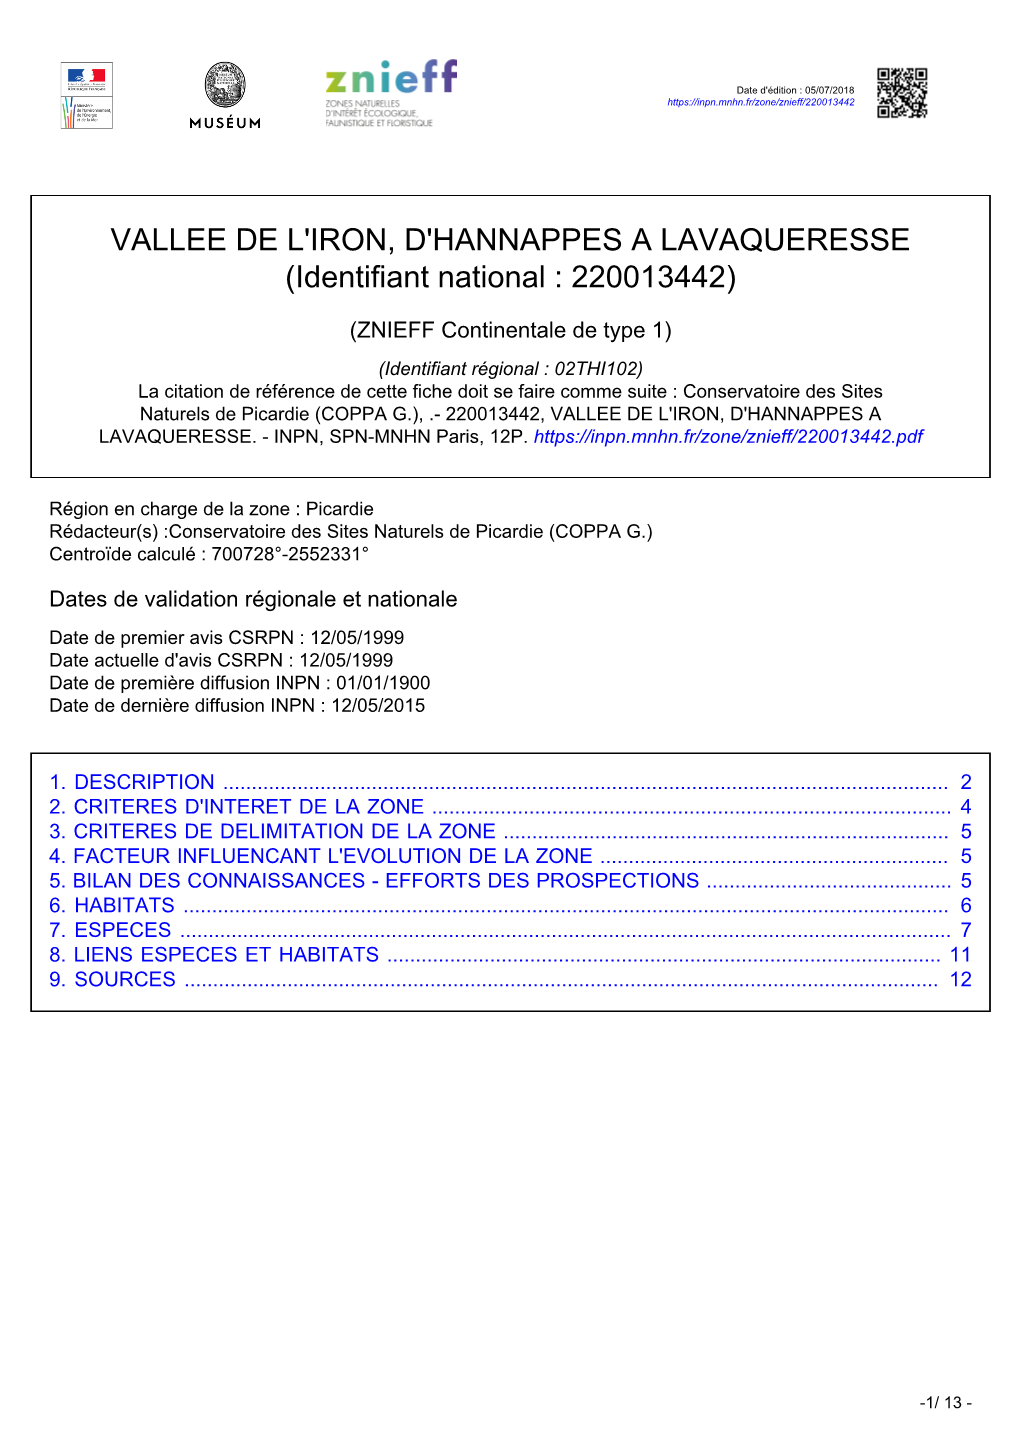 VALLEE DE L'iron, D'hannappes a LAVAQUERESSE (Identifiant National : 220013442)